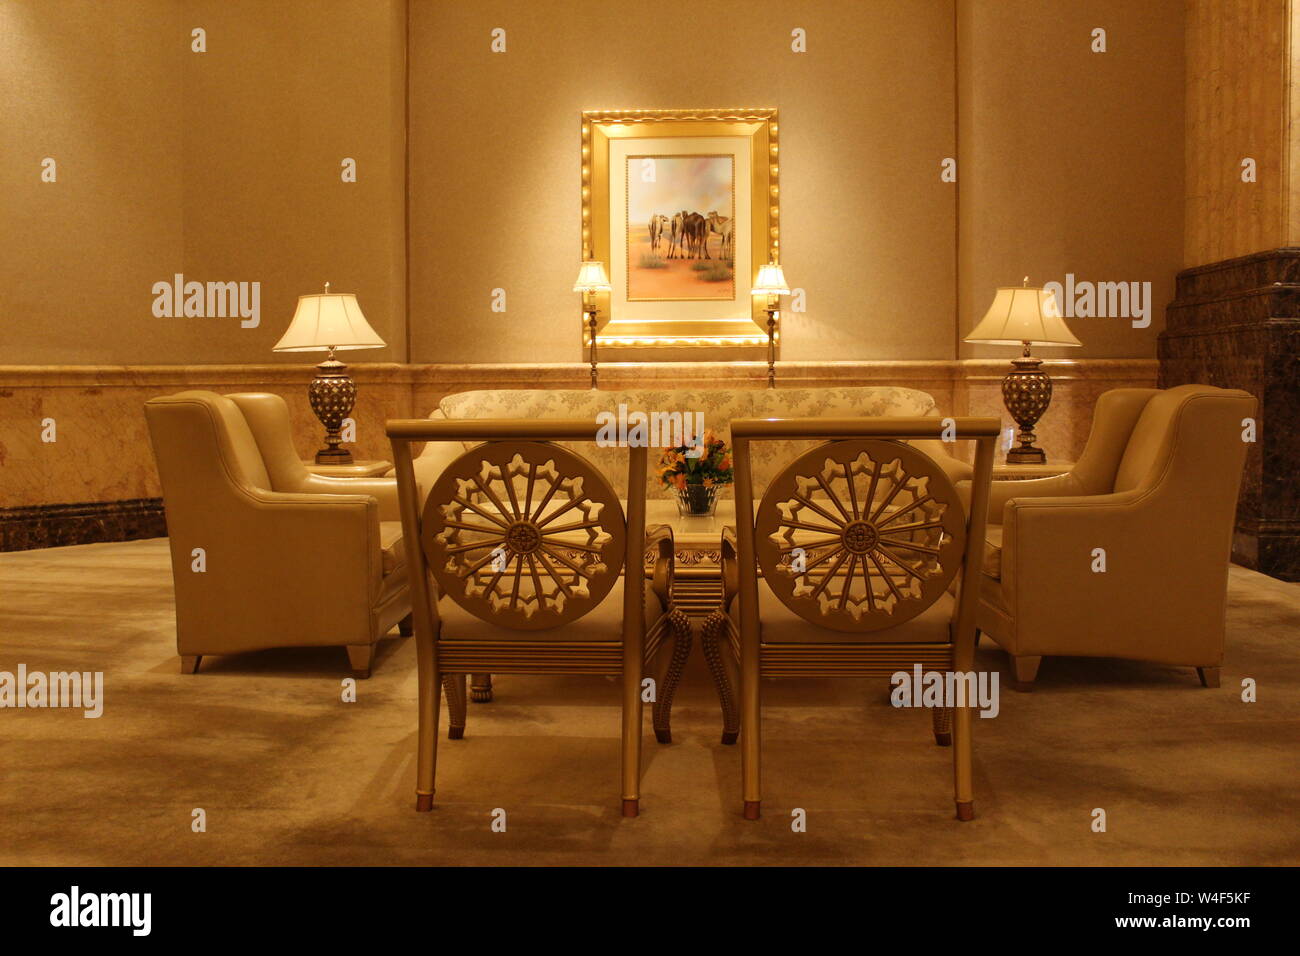 Decorations and Furniture Inside Emirates Palace, Abu Dhabi, UAE Stock Photo